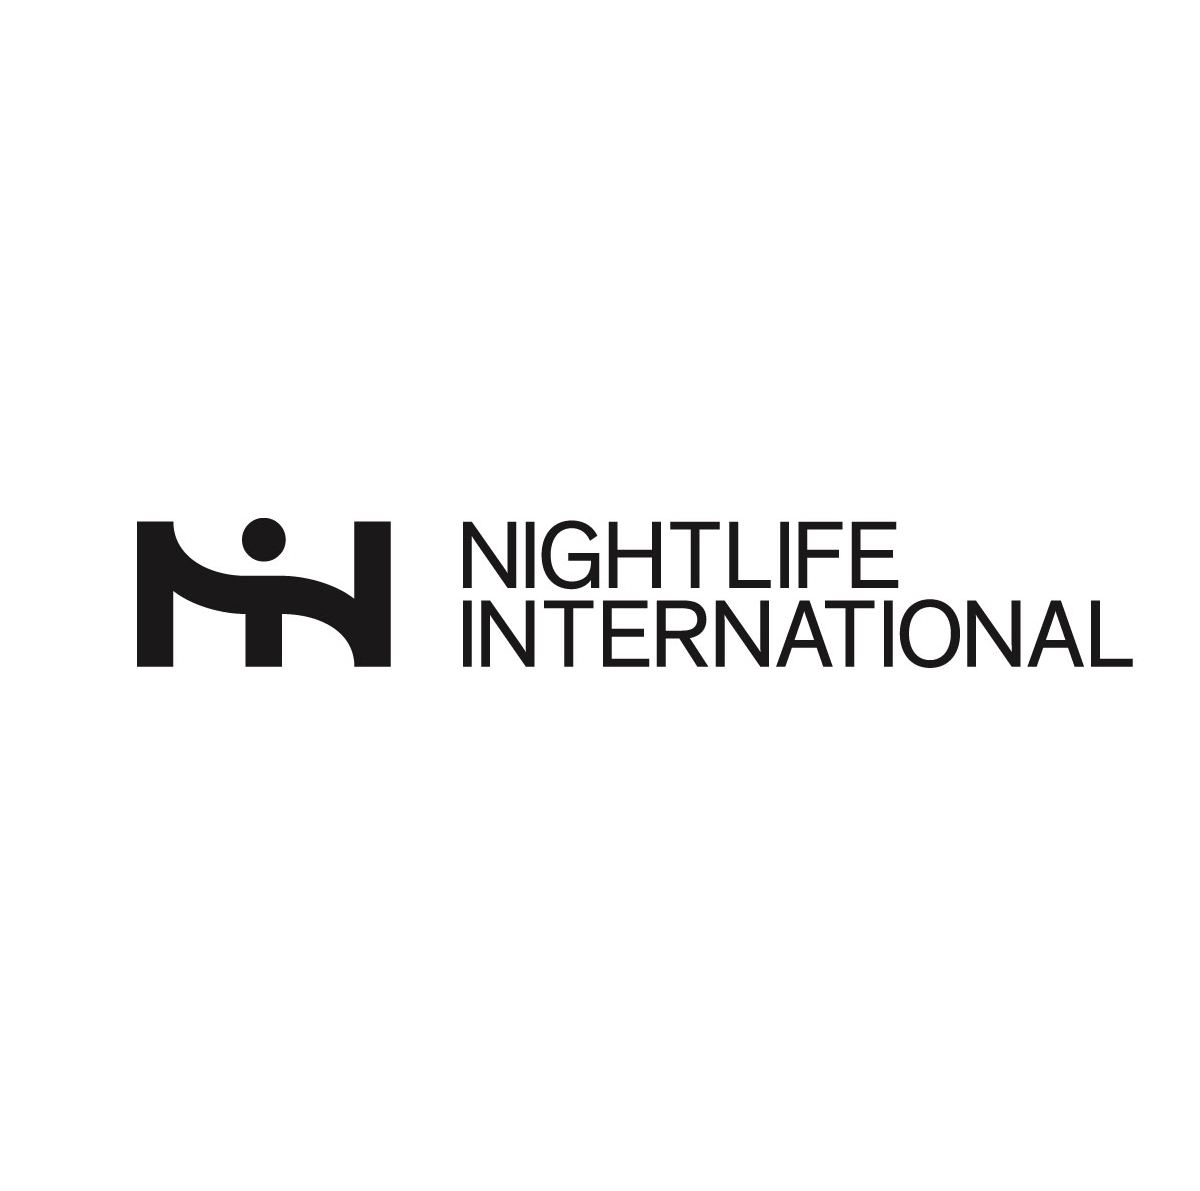 www.nightlifeinternational.org